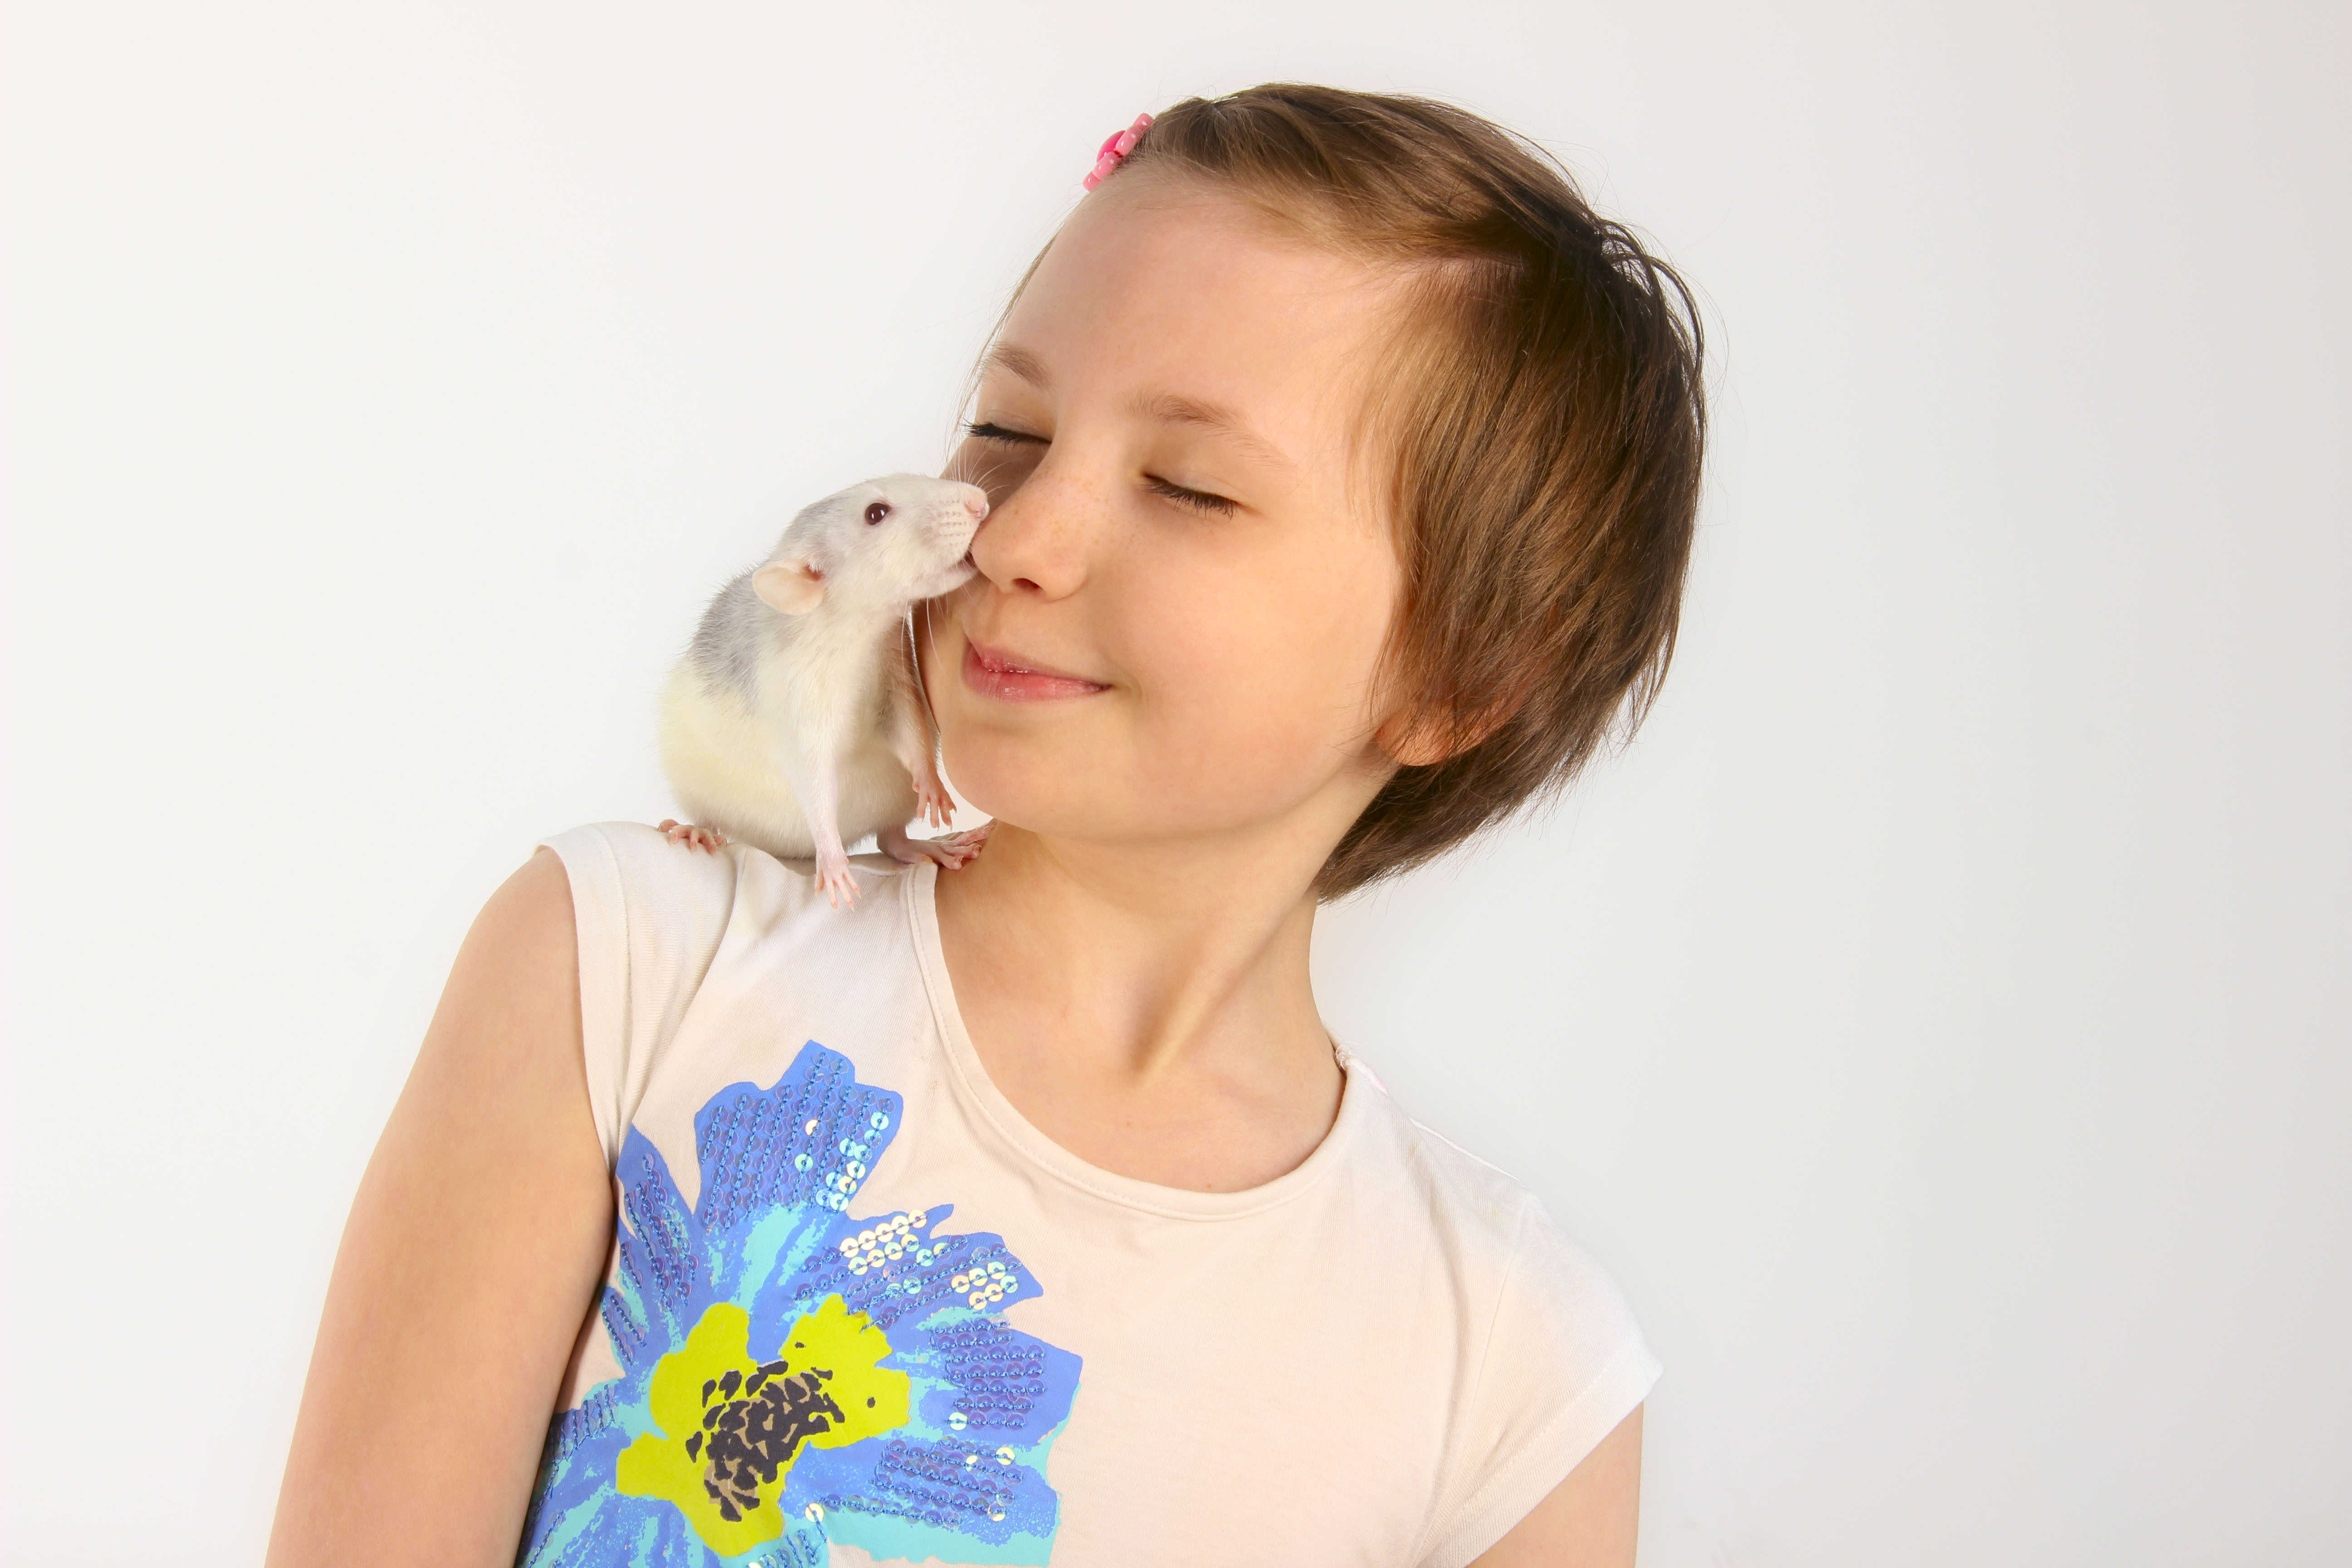 rat on child's shoulder